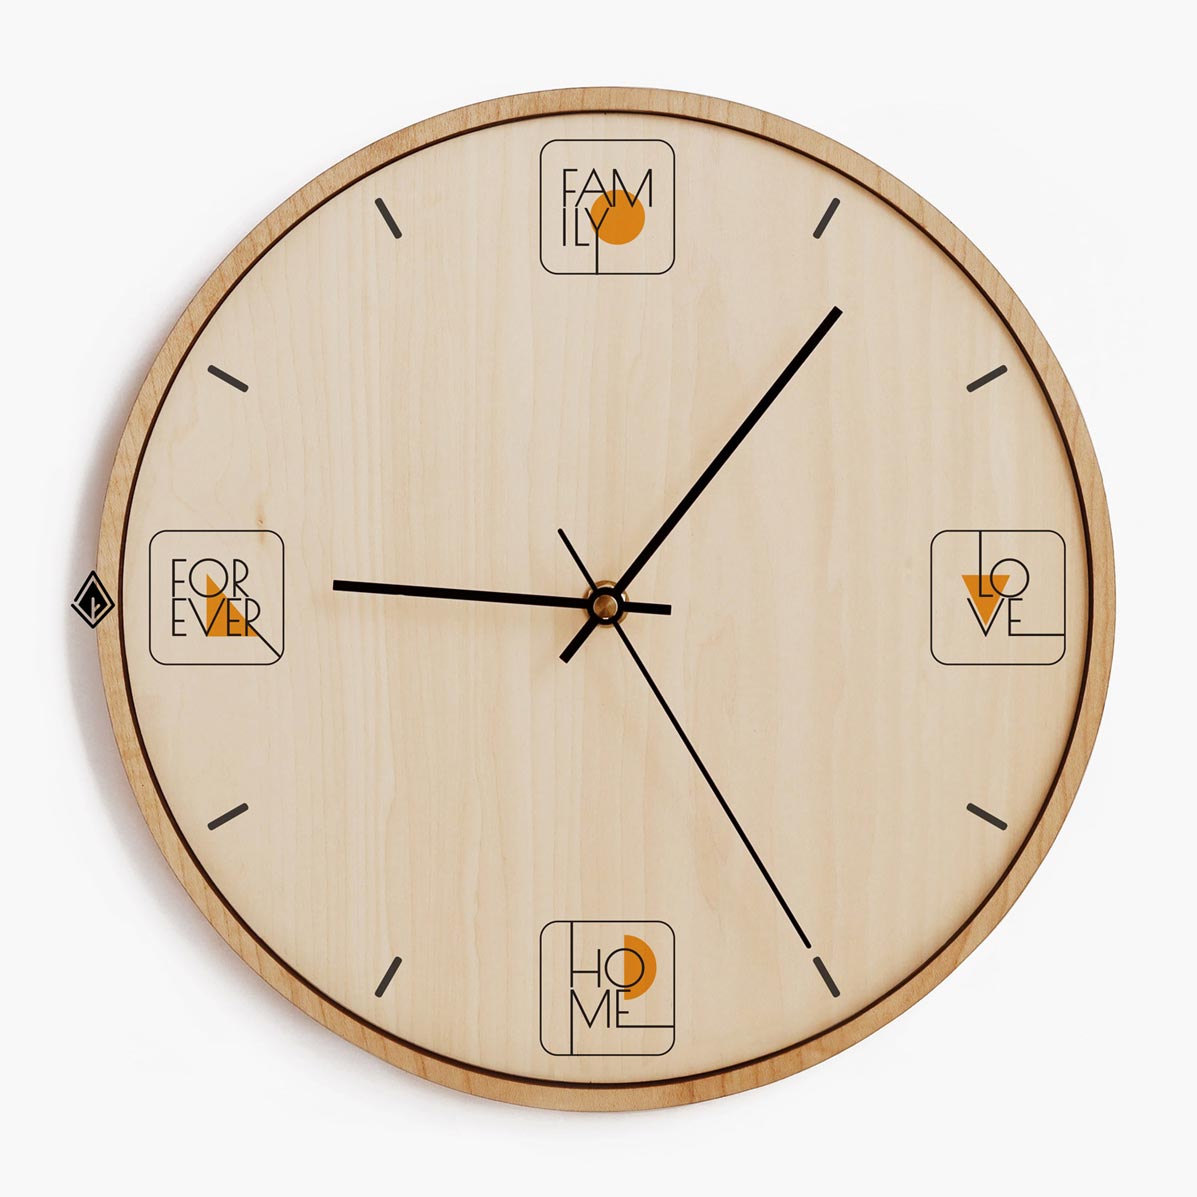 Wooden Wall Clocks Family